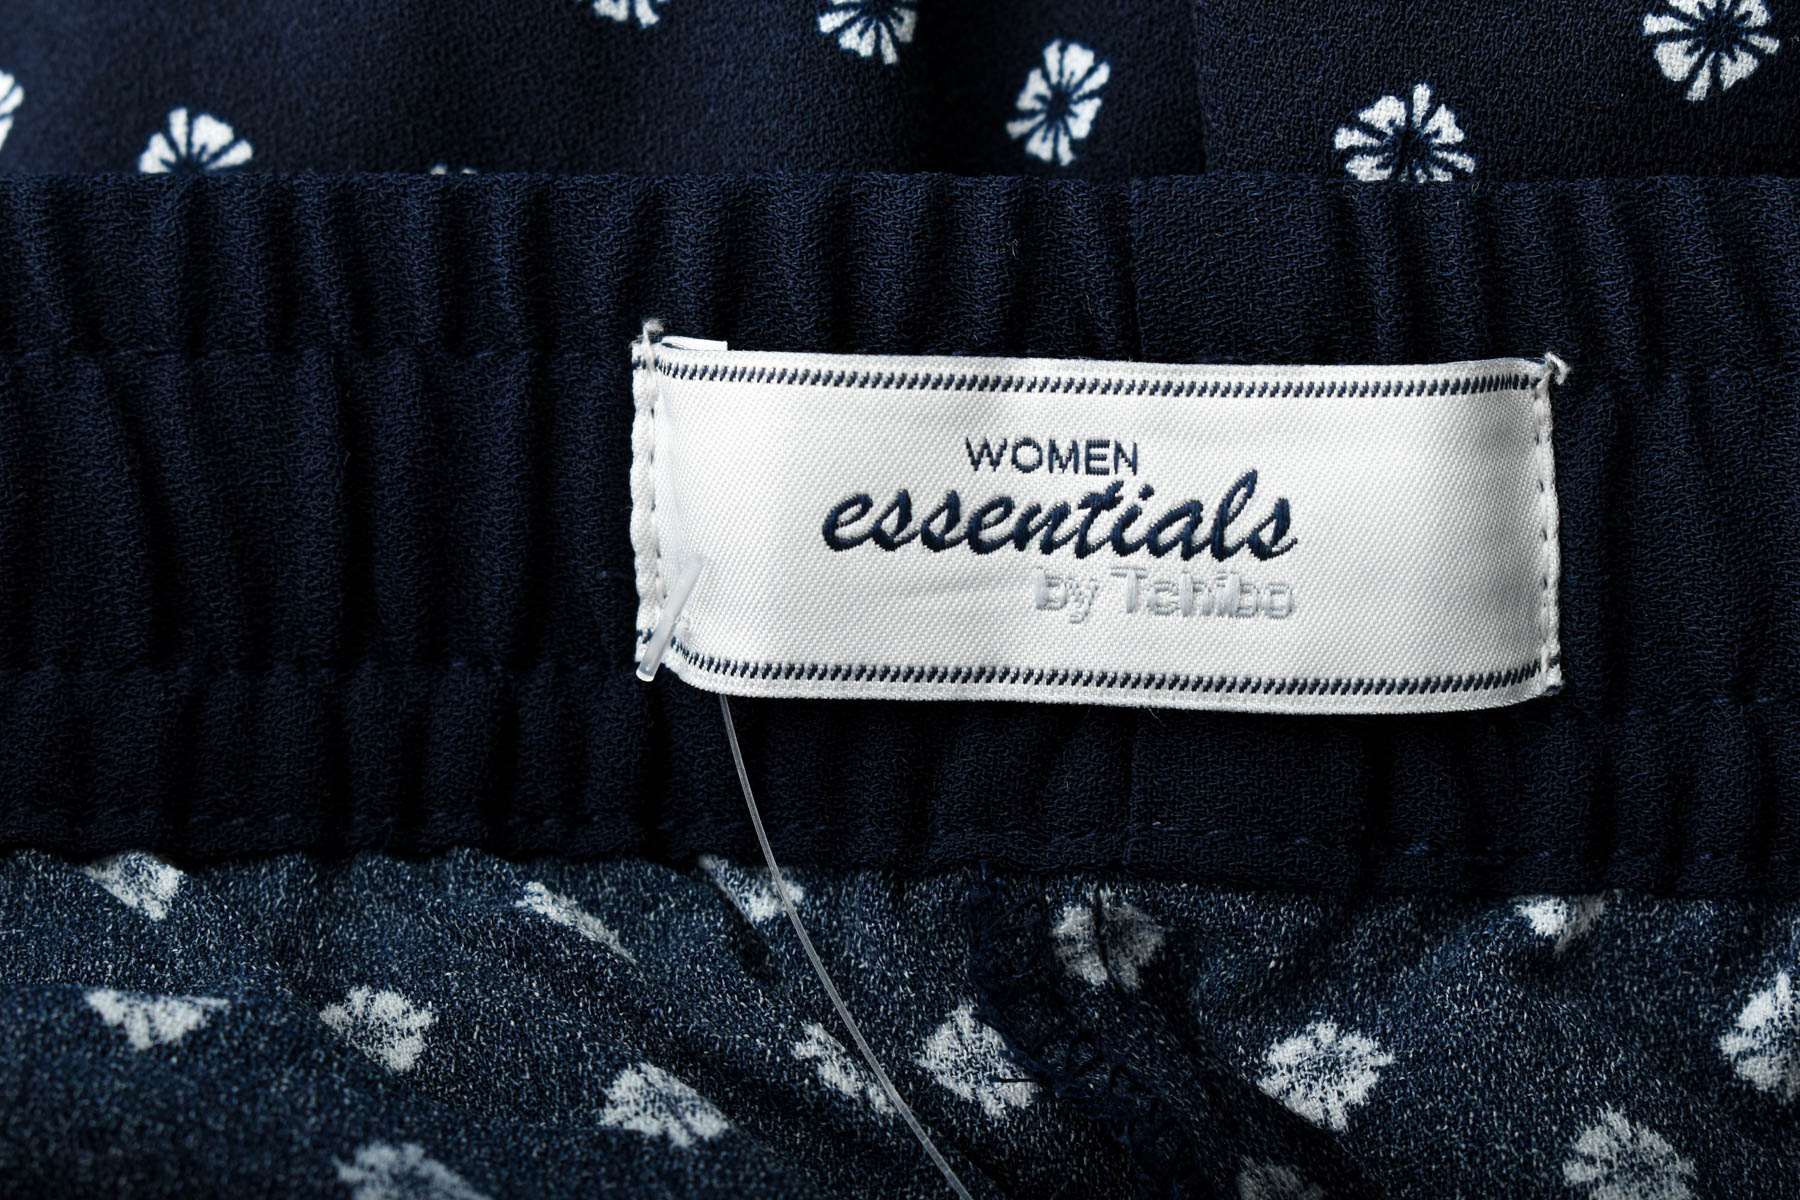 Γυναικεία παντελόνια - WOMEN essentials by Tchibo - 2